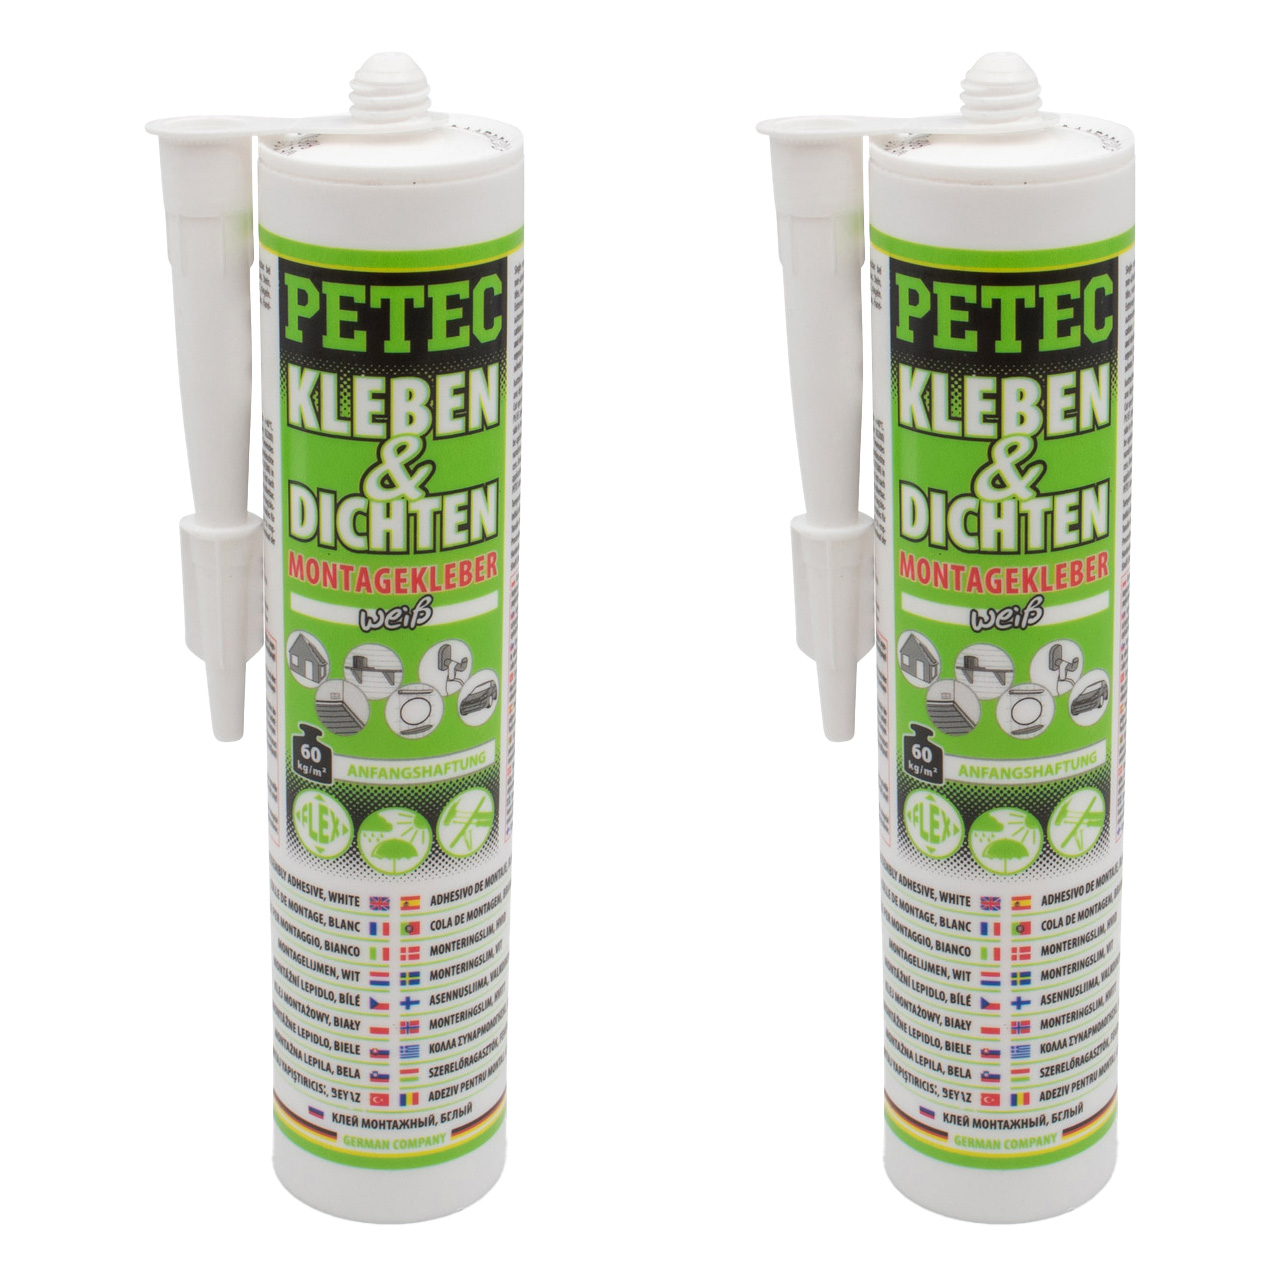 2x 290ml PETEC Kleben & Dichten Montagekleber Kleber Klebstoff elastisch weiß Kartusche